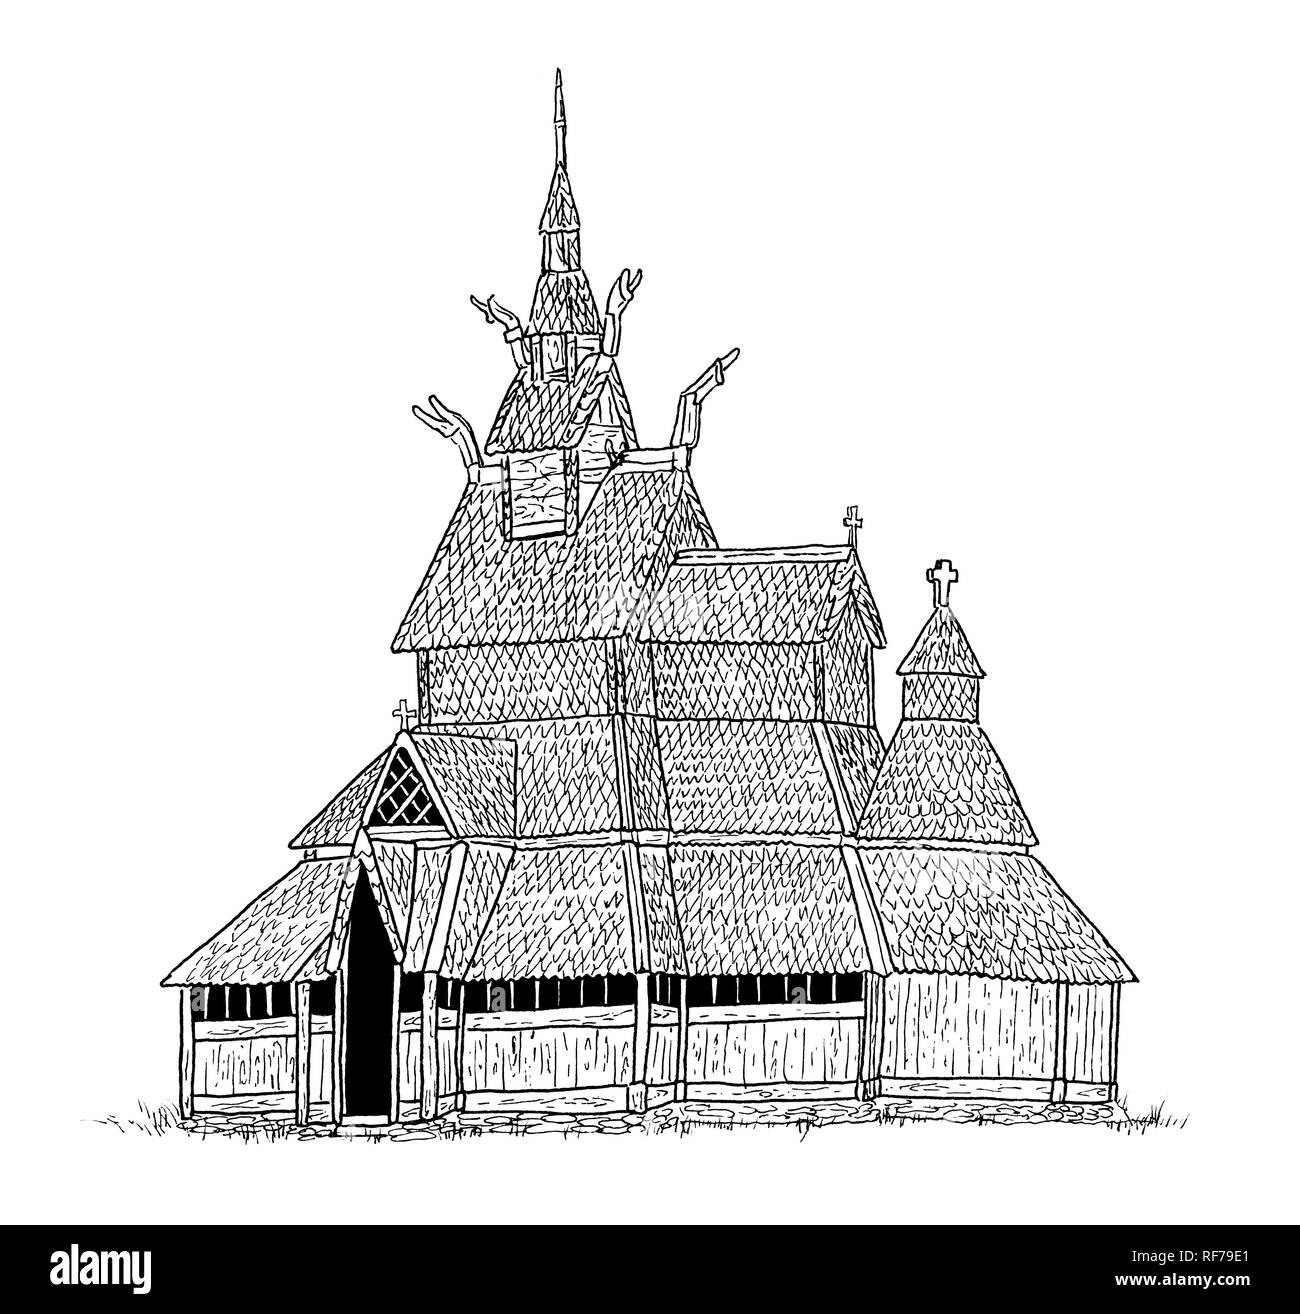 Disegno del norvegese doga vecchia chiesa in Saele, Sogn og Fjordane. Schizzo a mano di architettura scandinava, in bianco e nero illustrazione. Foto Stock